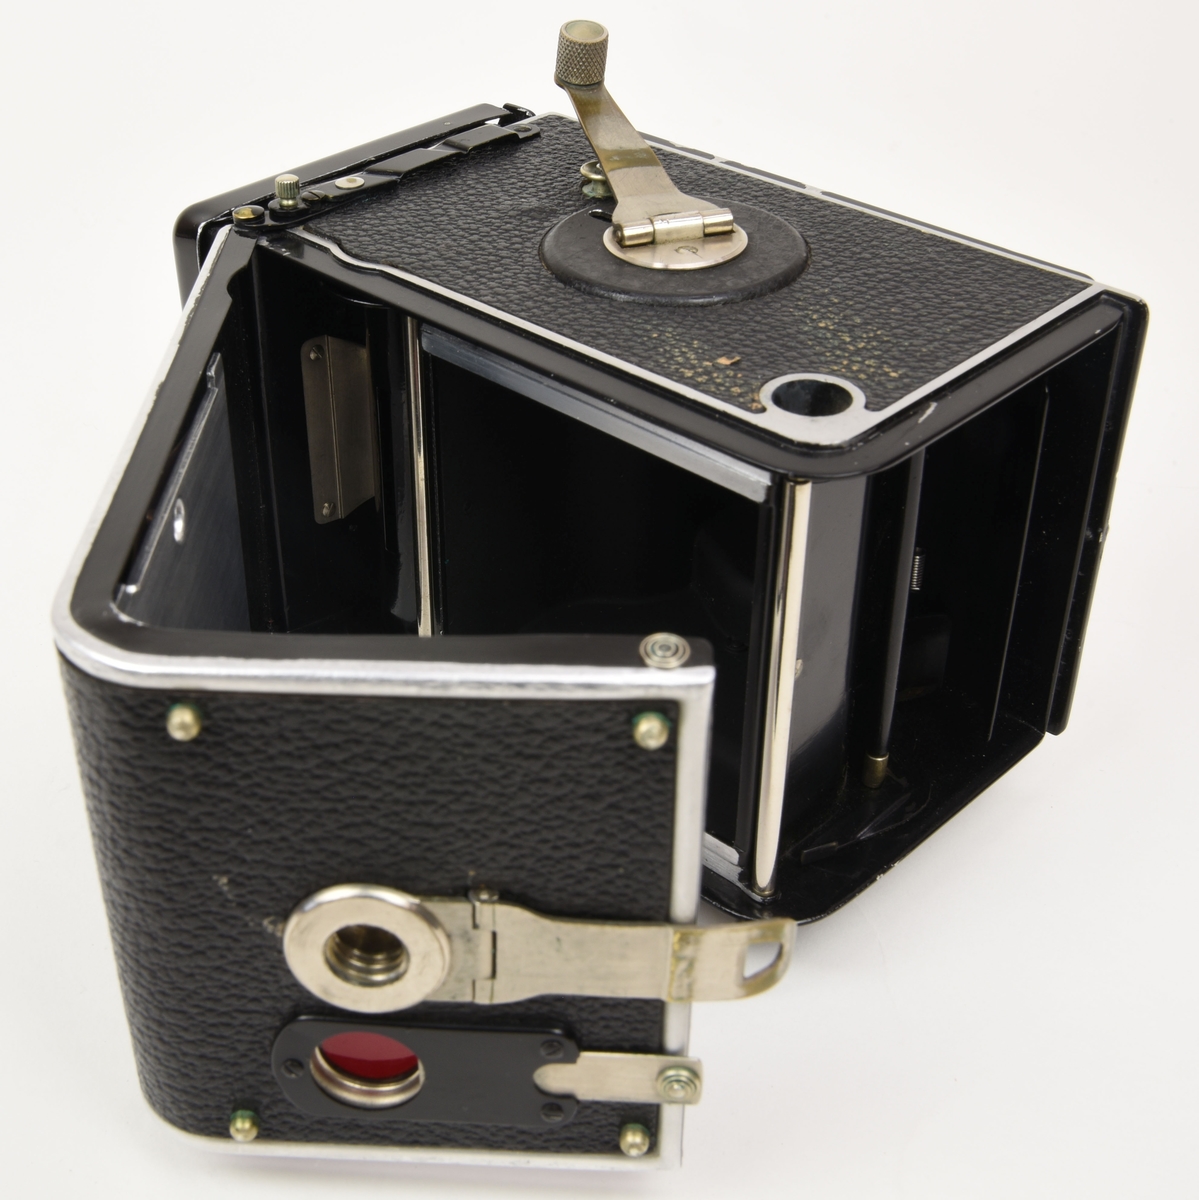 En tvåögd spegelreflexkamera av typen Rolleiflex (:1) med tillhörande beredskapsväska gjord av brunt läder (:2).

Det översta objektivet (som används för att komponera bilden) i kameran är ett Heidoscop-Anastigmat 75mm f 3,1. Det nedersta objektivet som används för att ta själva bilden är ett Carl Zeiss Jena modell Tessar 75mm f 3,5. Kameran är gjord i metall och är dekorerad med konstläder / läderimitation.

Den bruna beredskapsväskan (:2) har på baksidan ett fönster av gulnad plast som är till för att kunna läsa exponeringstabellen på kamerans baksida.

Kameran tar 120 film.